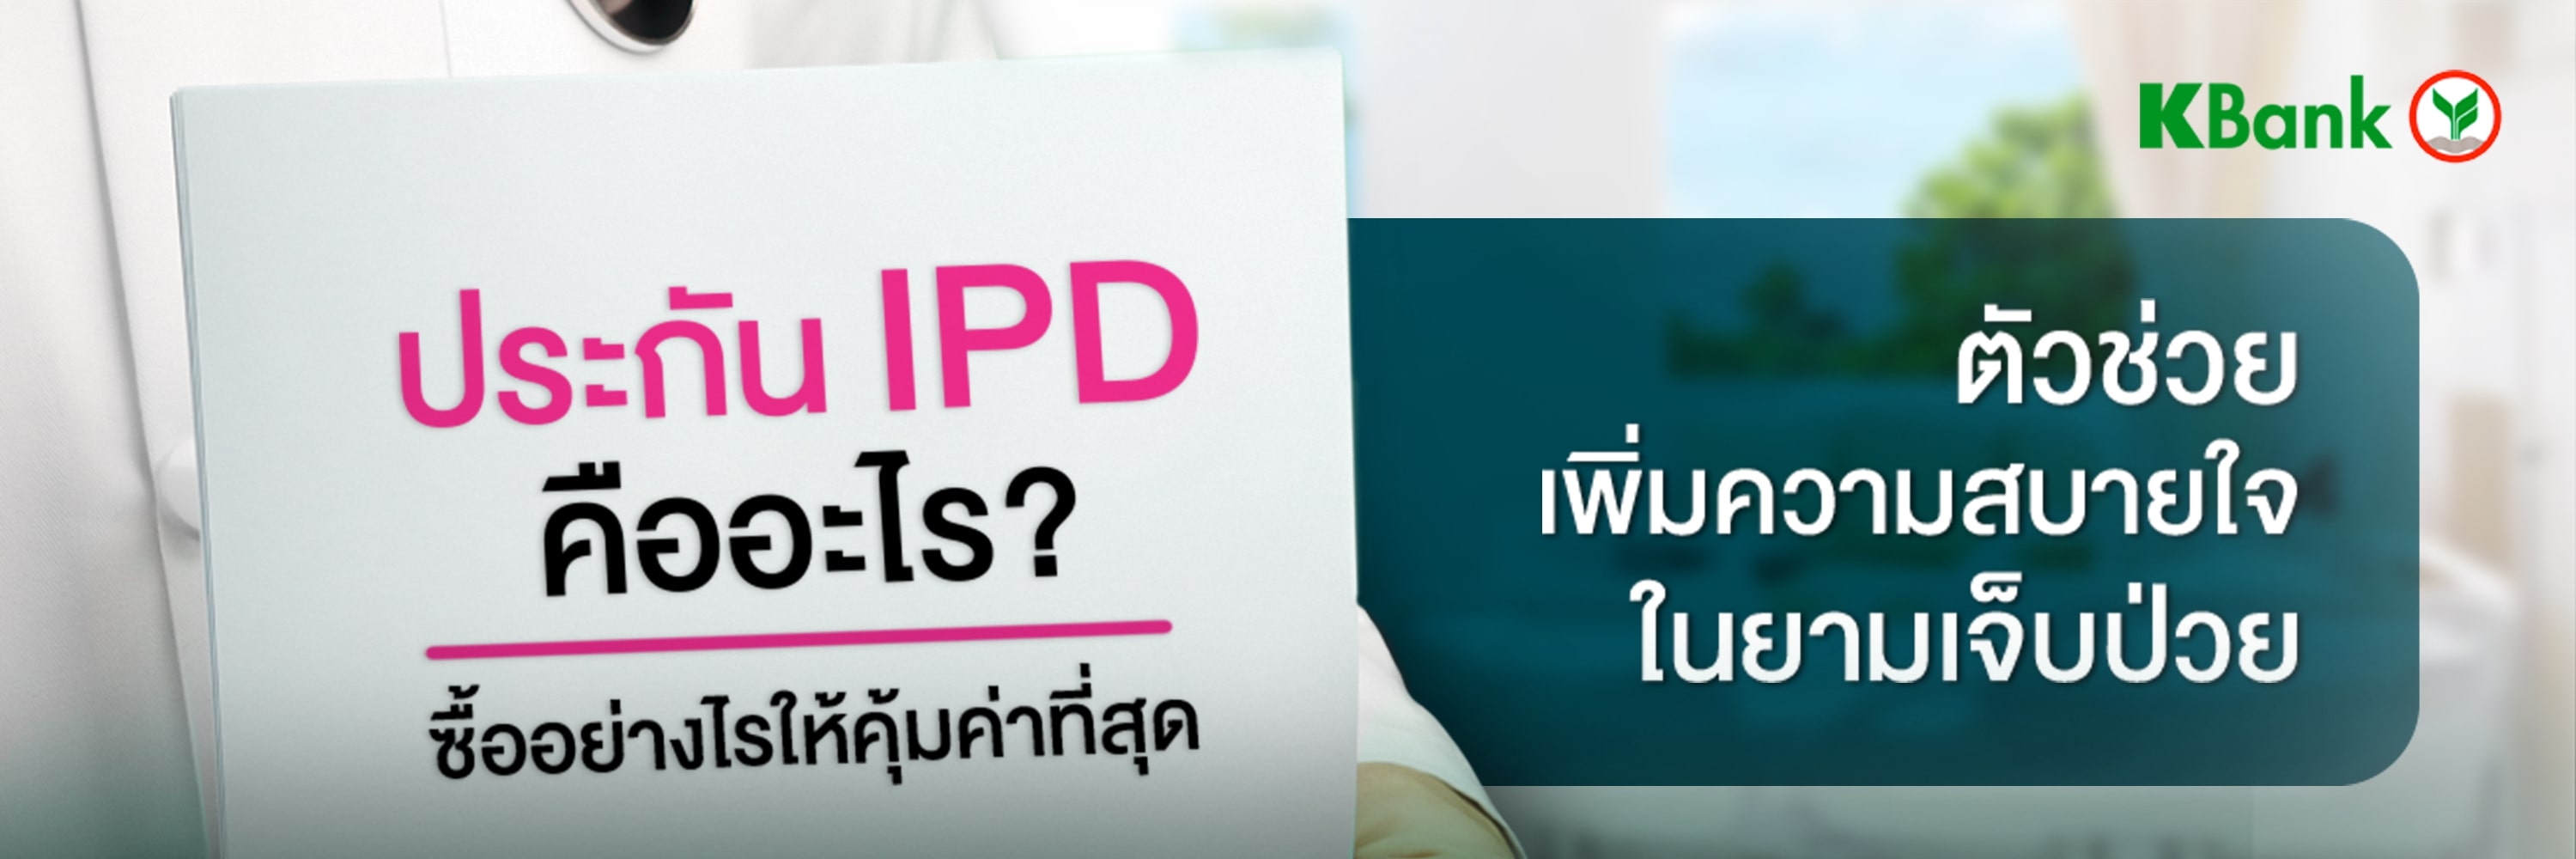 IPD คืออะไร? รู้จักประกัน IPD ประกันผู้ป่วยใน ตัวช่วยเพิ่มความสบายใจในยามเจ็บป่วย